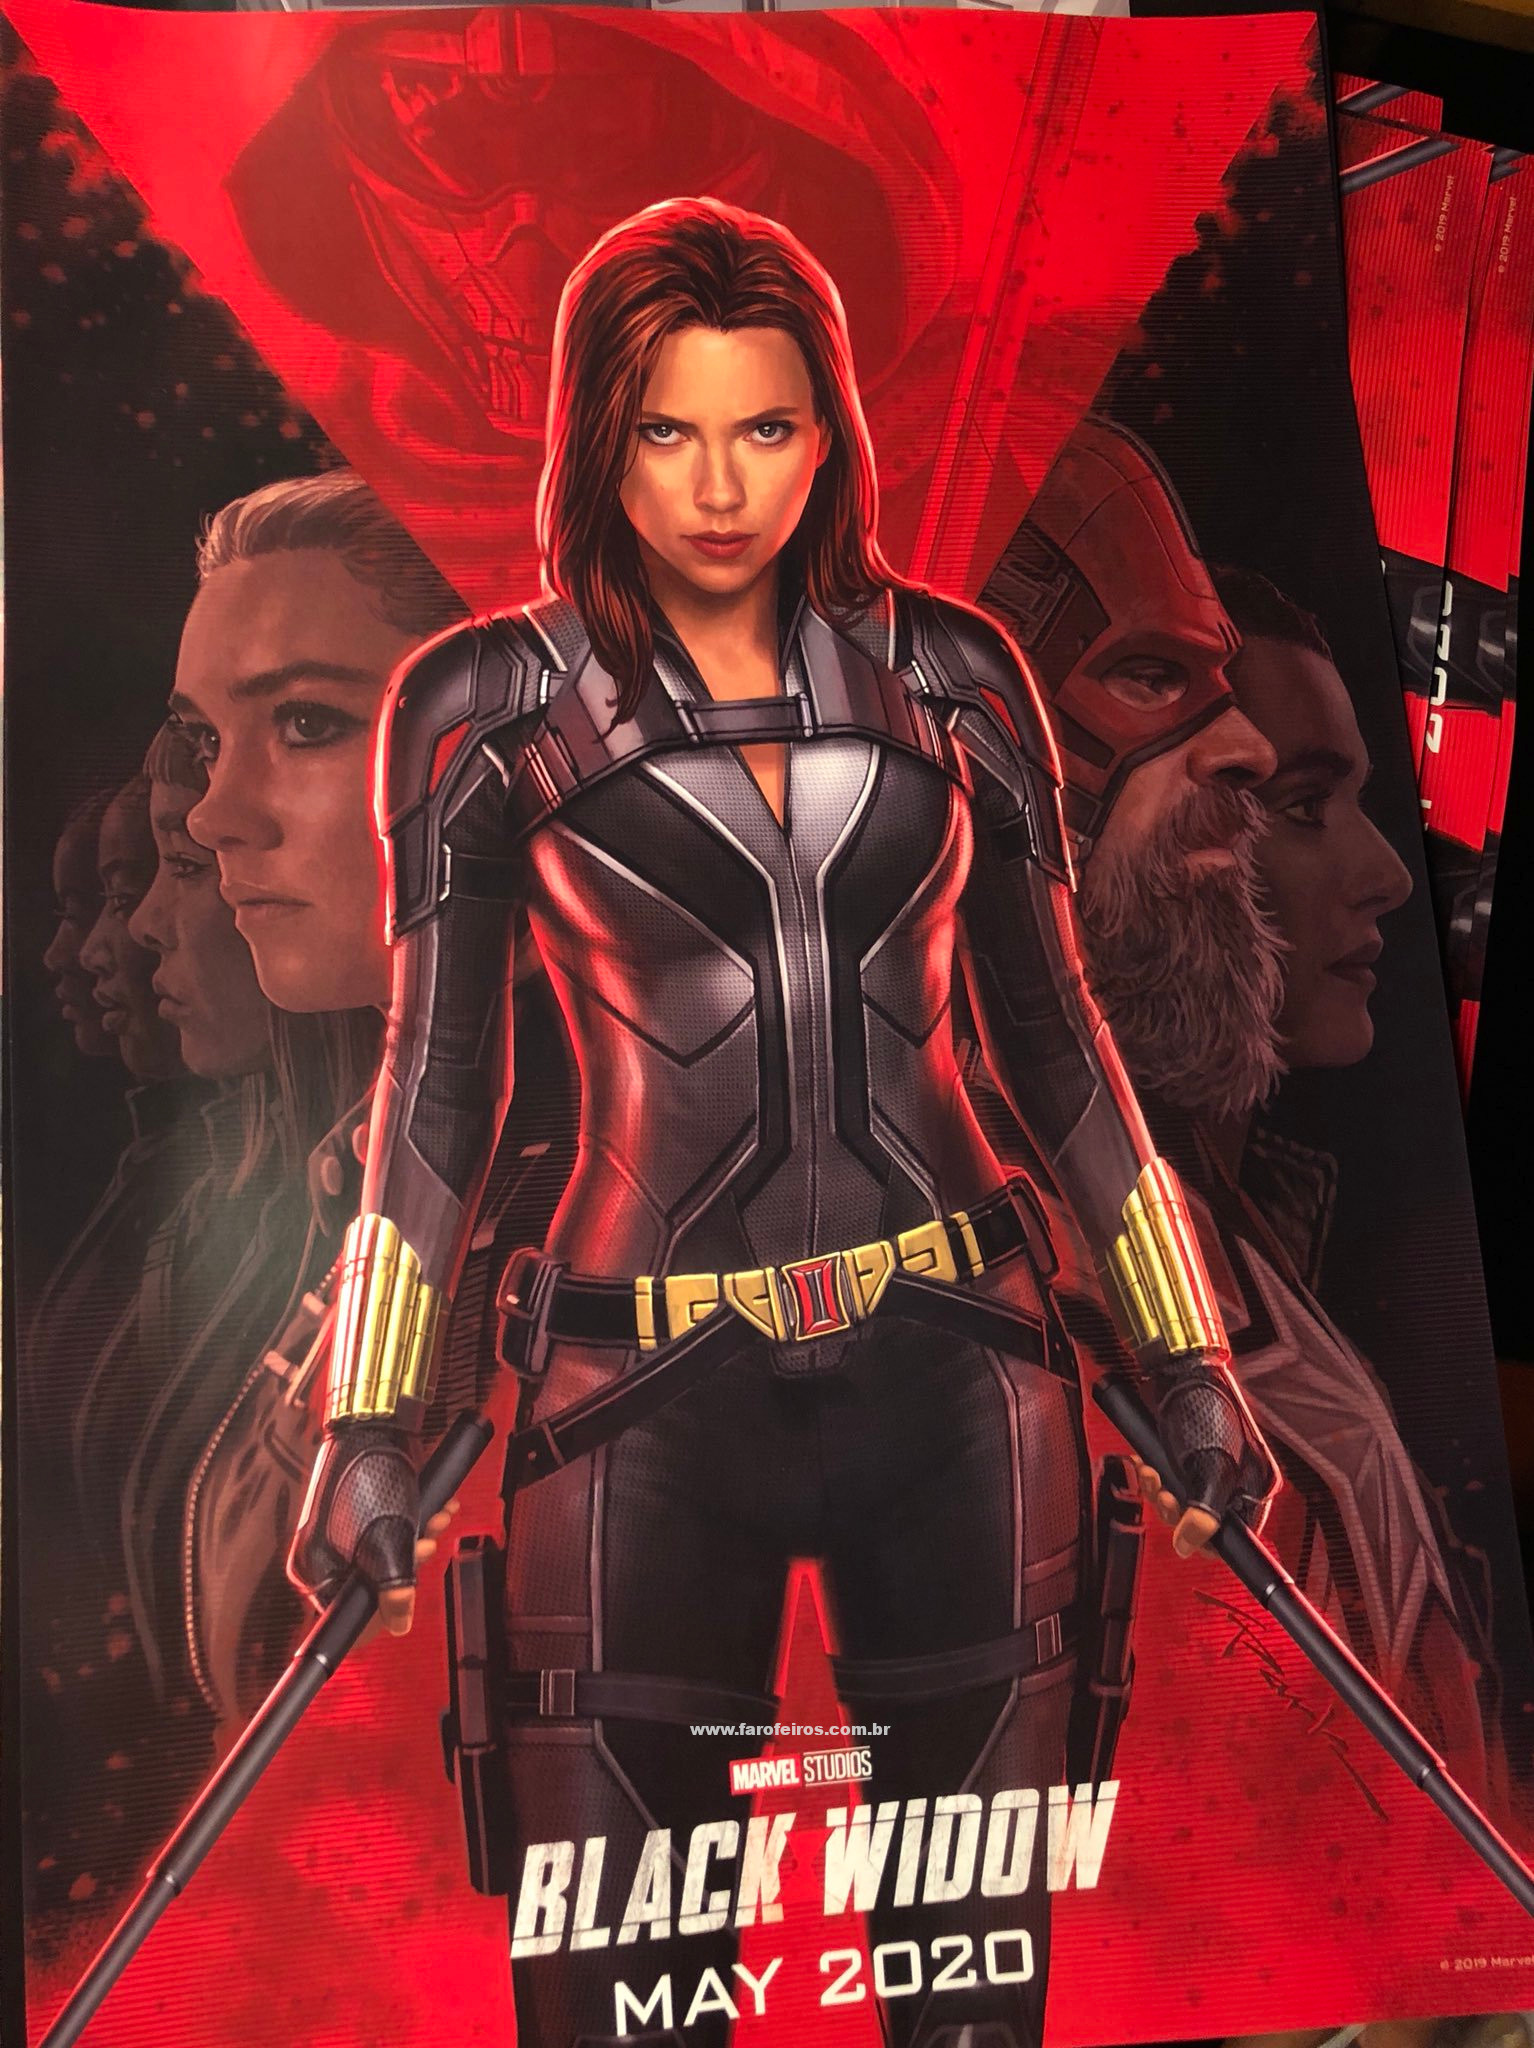 Viúva Negra - Poster oficial - Novidades dos filmes da Marvel Studios na D23 Expo 2019 - Blog Farofeiros